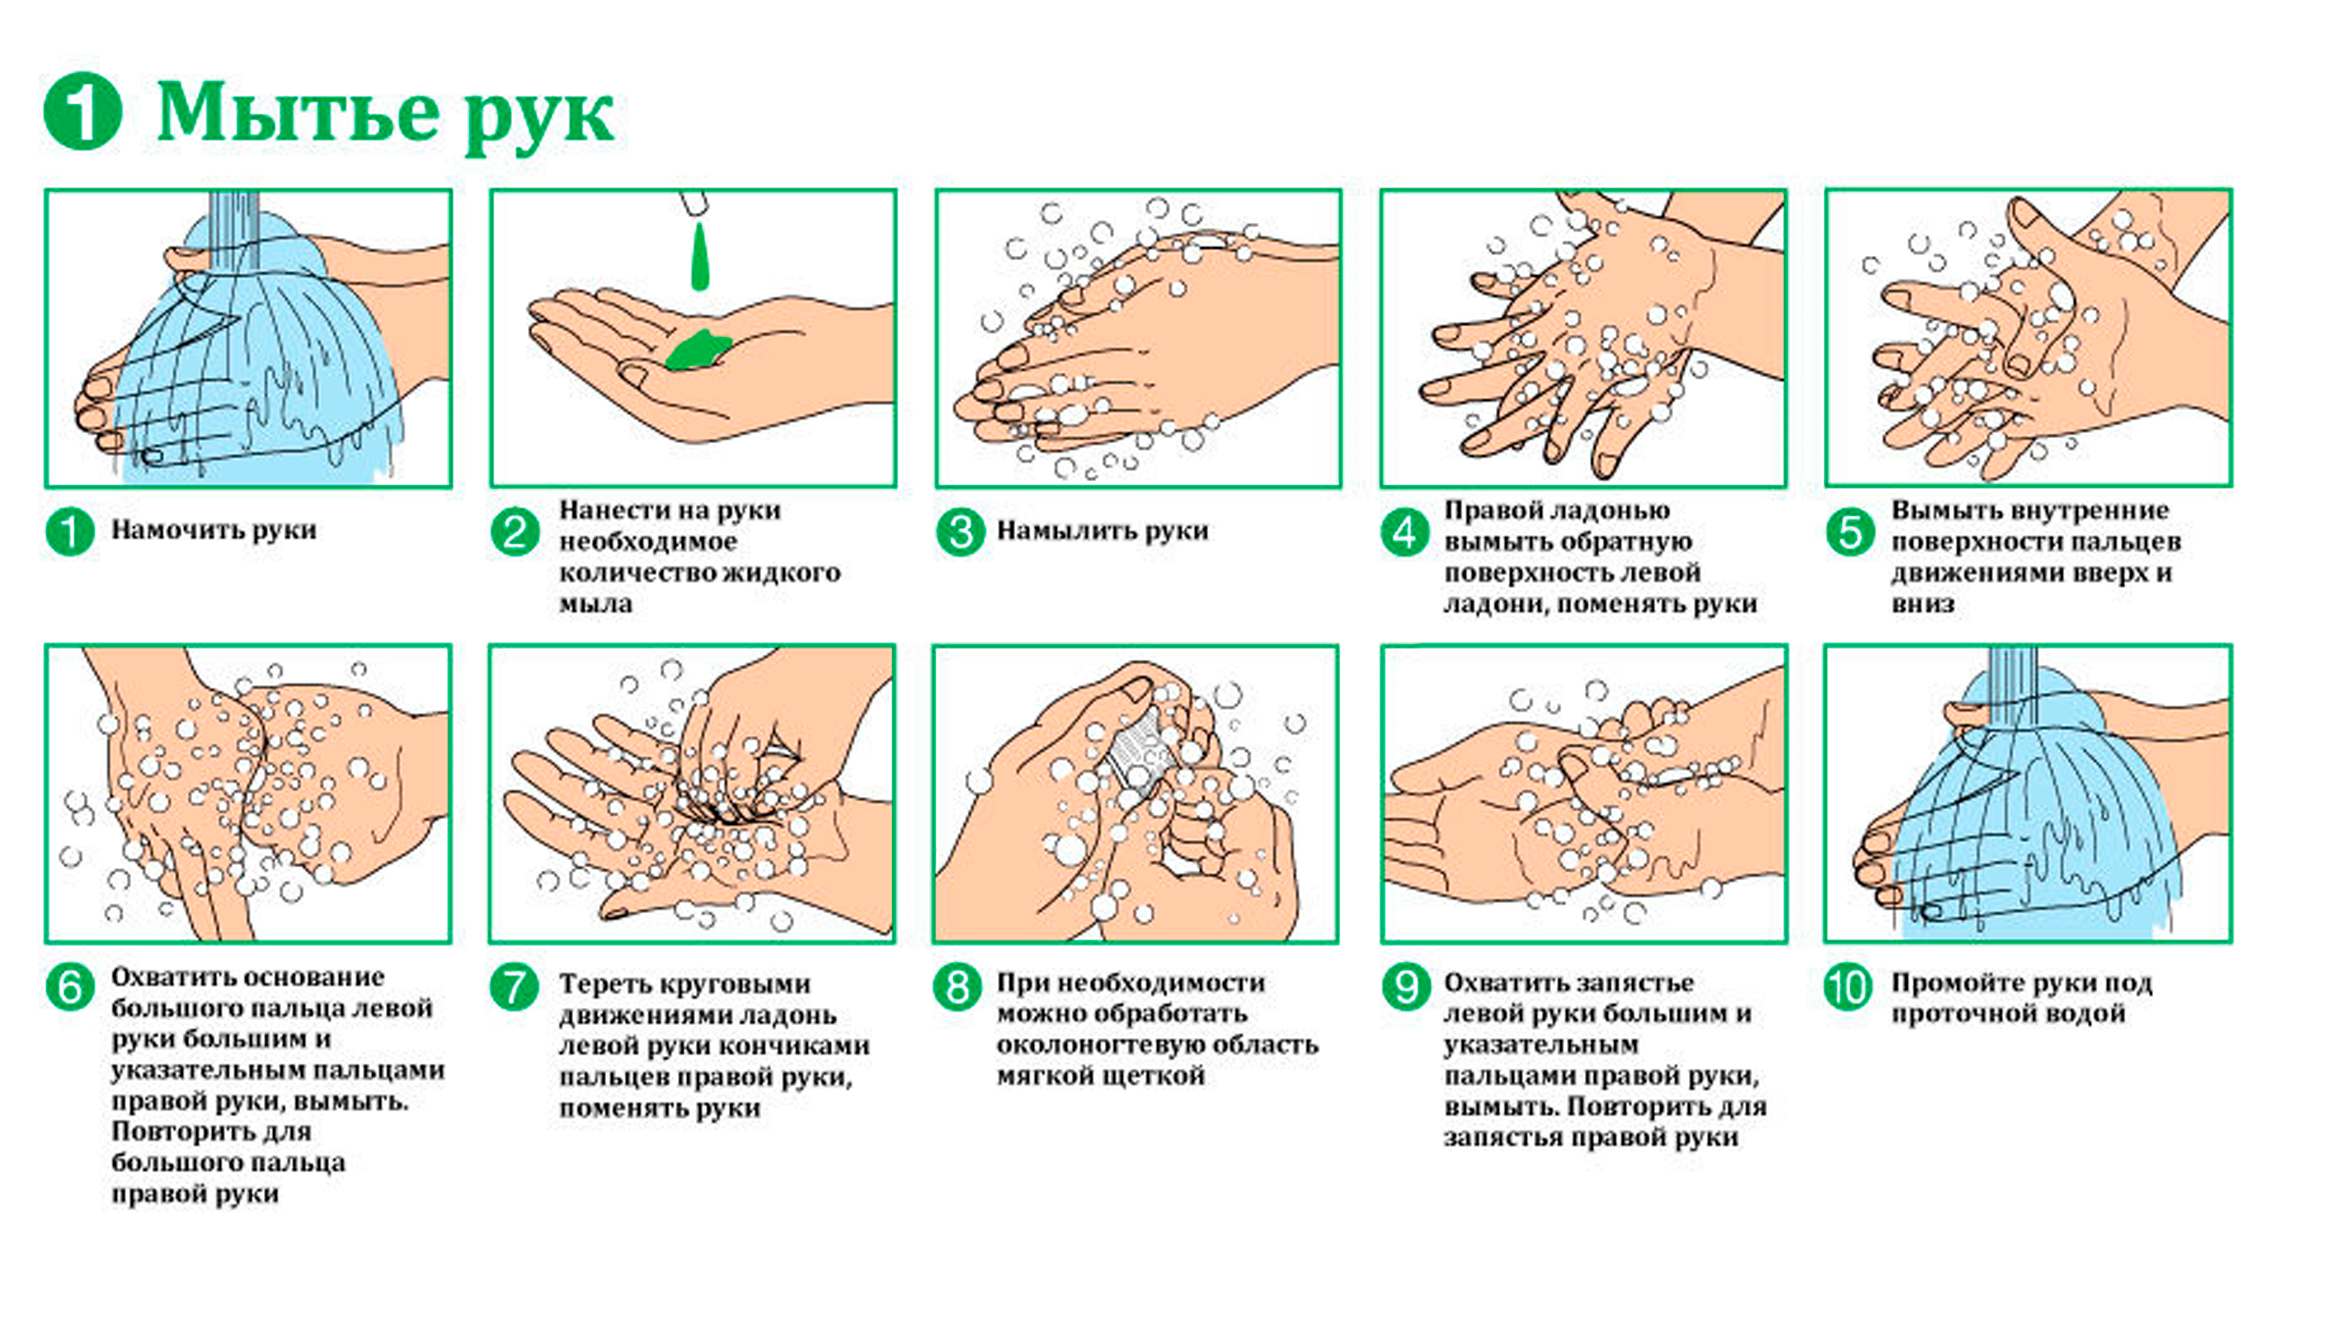 Стандарты мытье. Гигиенический метод мытья рук алгоритм. Алгоритм обработки рук гигиеническим способом алгоритм. Схема гигиенического мытья рук медперсонала. Схема гигиенический способ мытья рук.